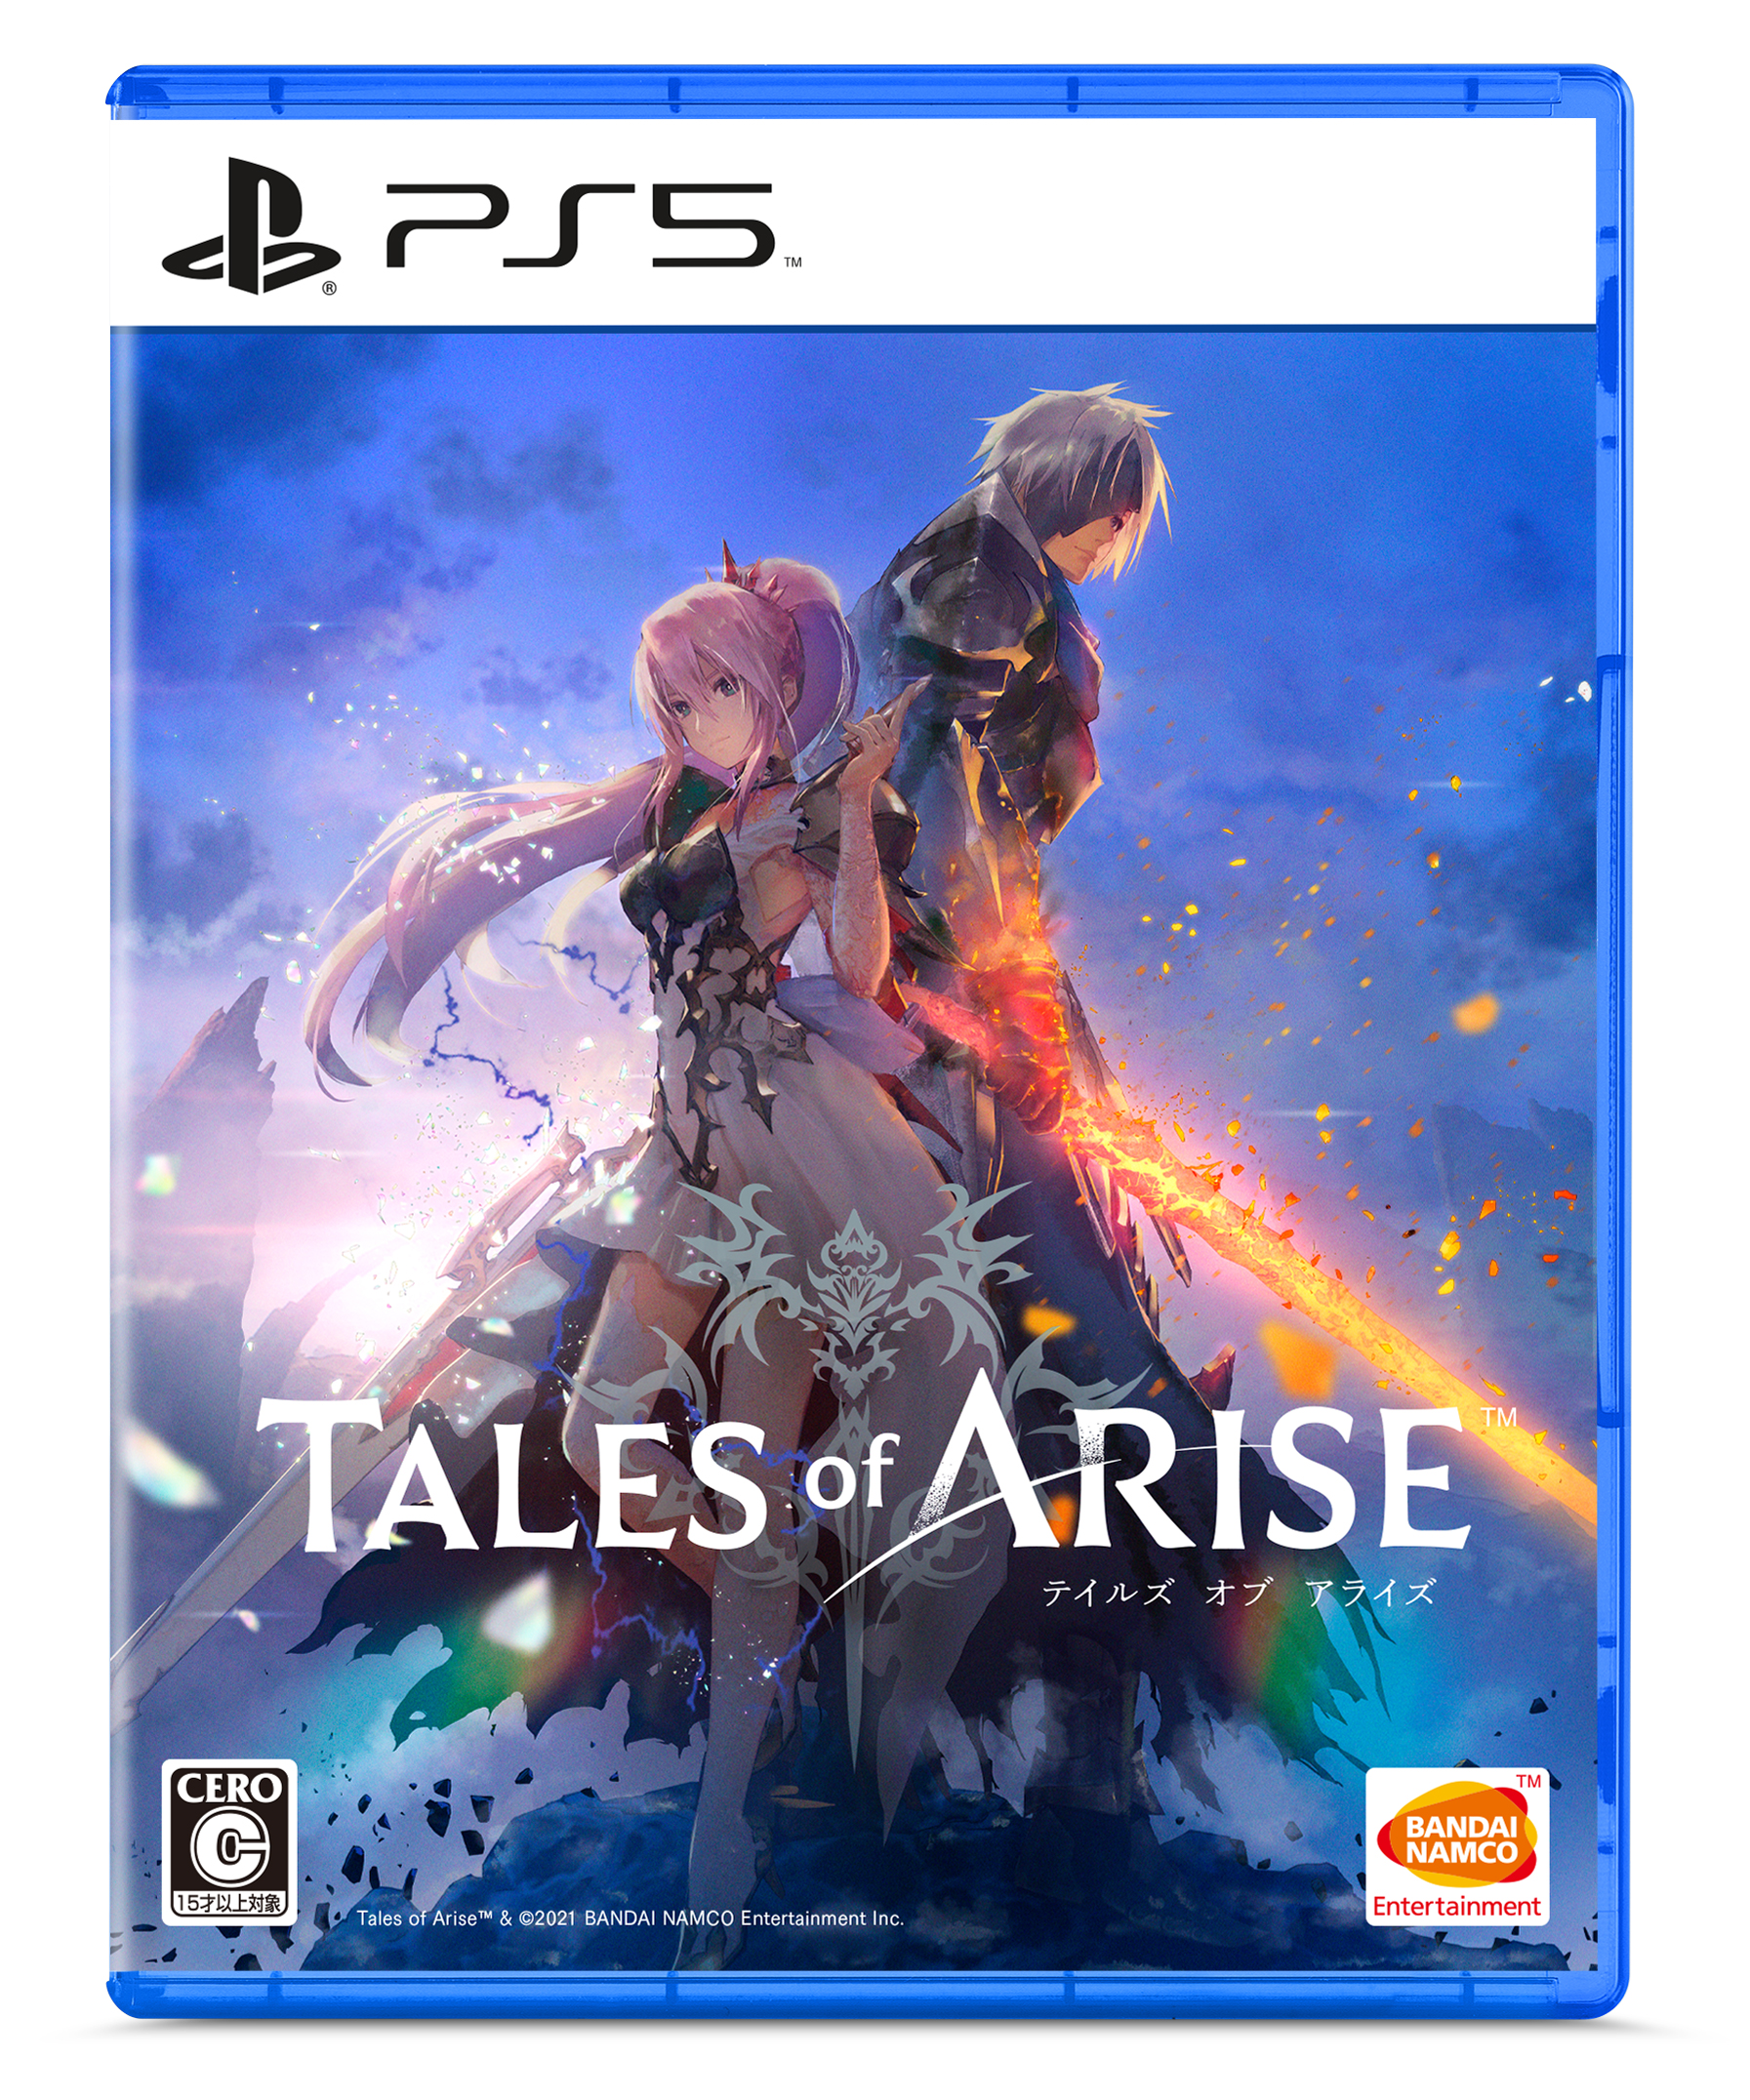 Tales Of Arise 秘奥義が公開 パーティキャラクターや物語の舞台に関する新たな情報も 株式会社バンダイナムコエンターテインメントのプレスリリース